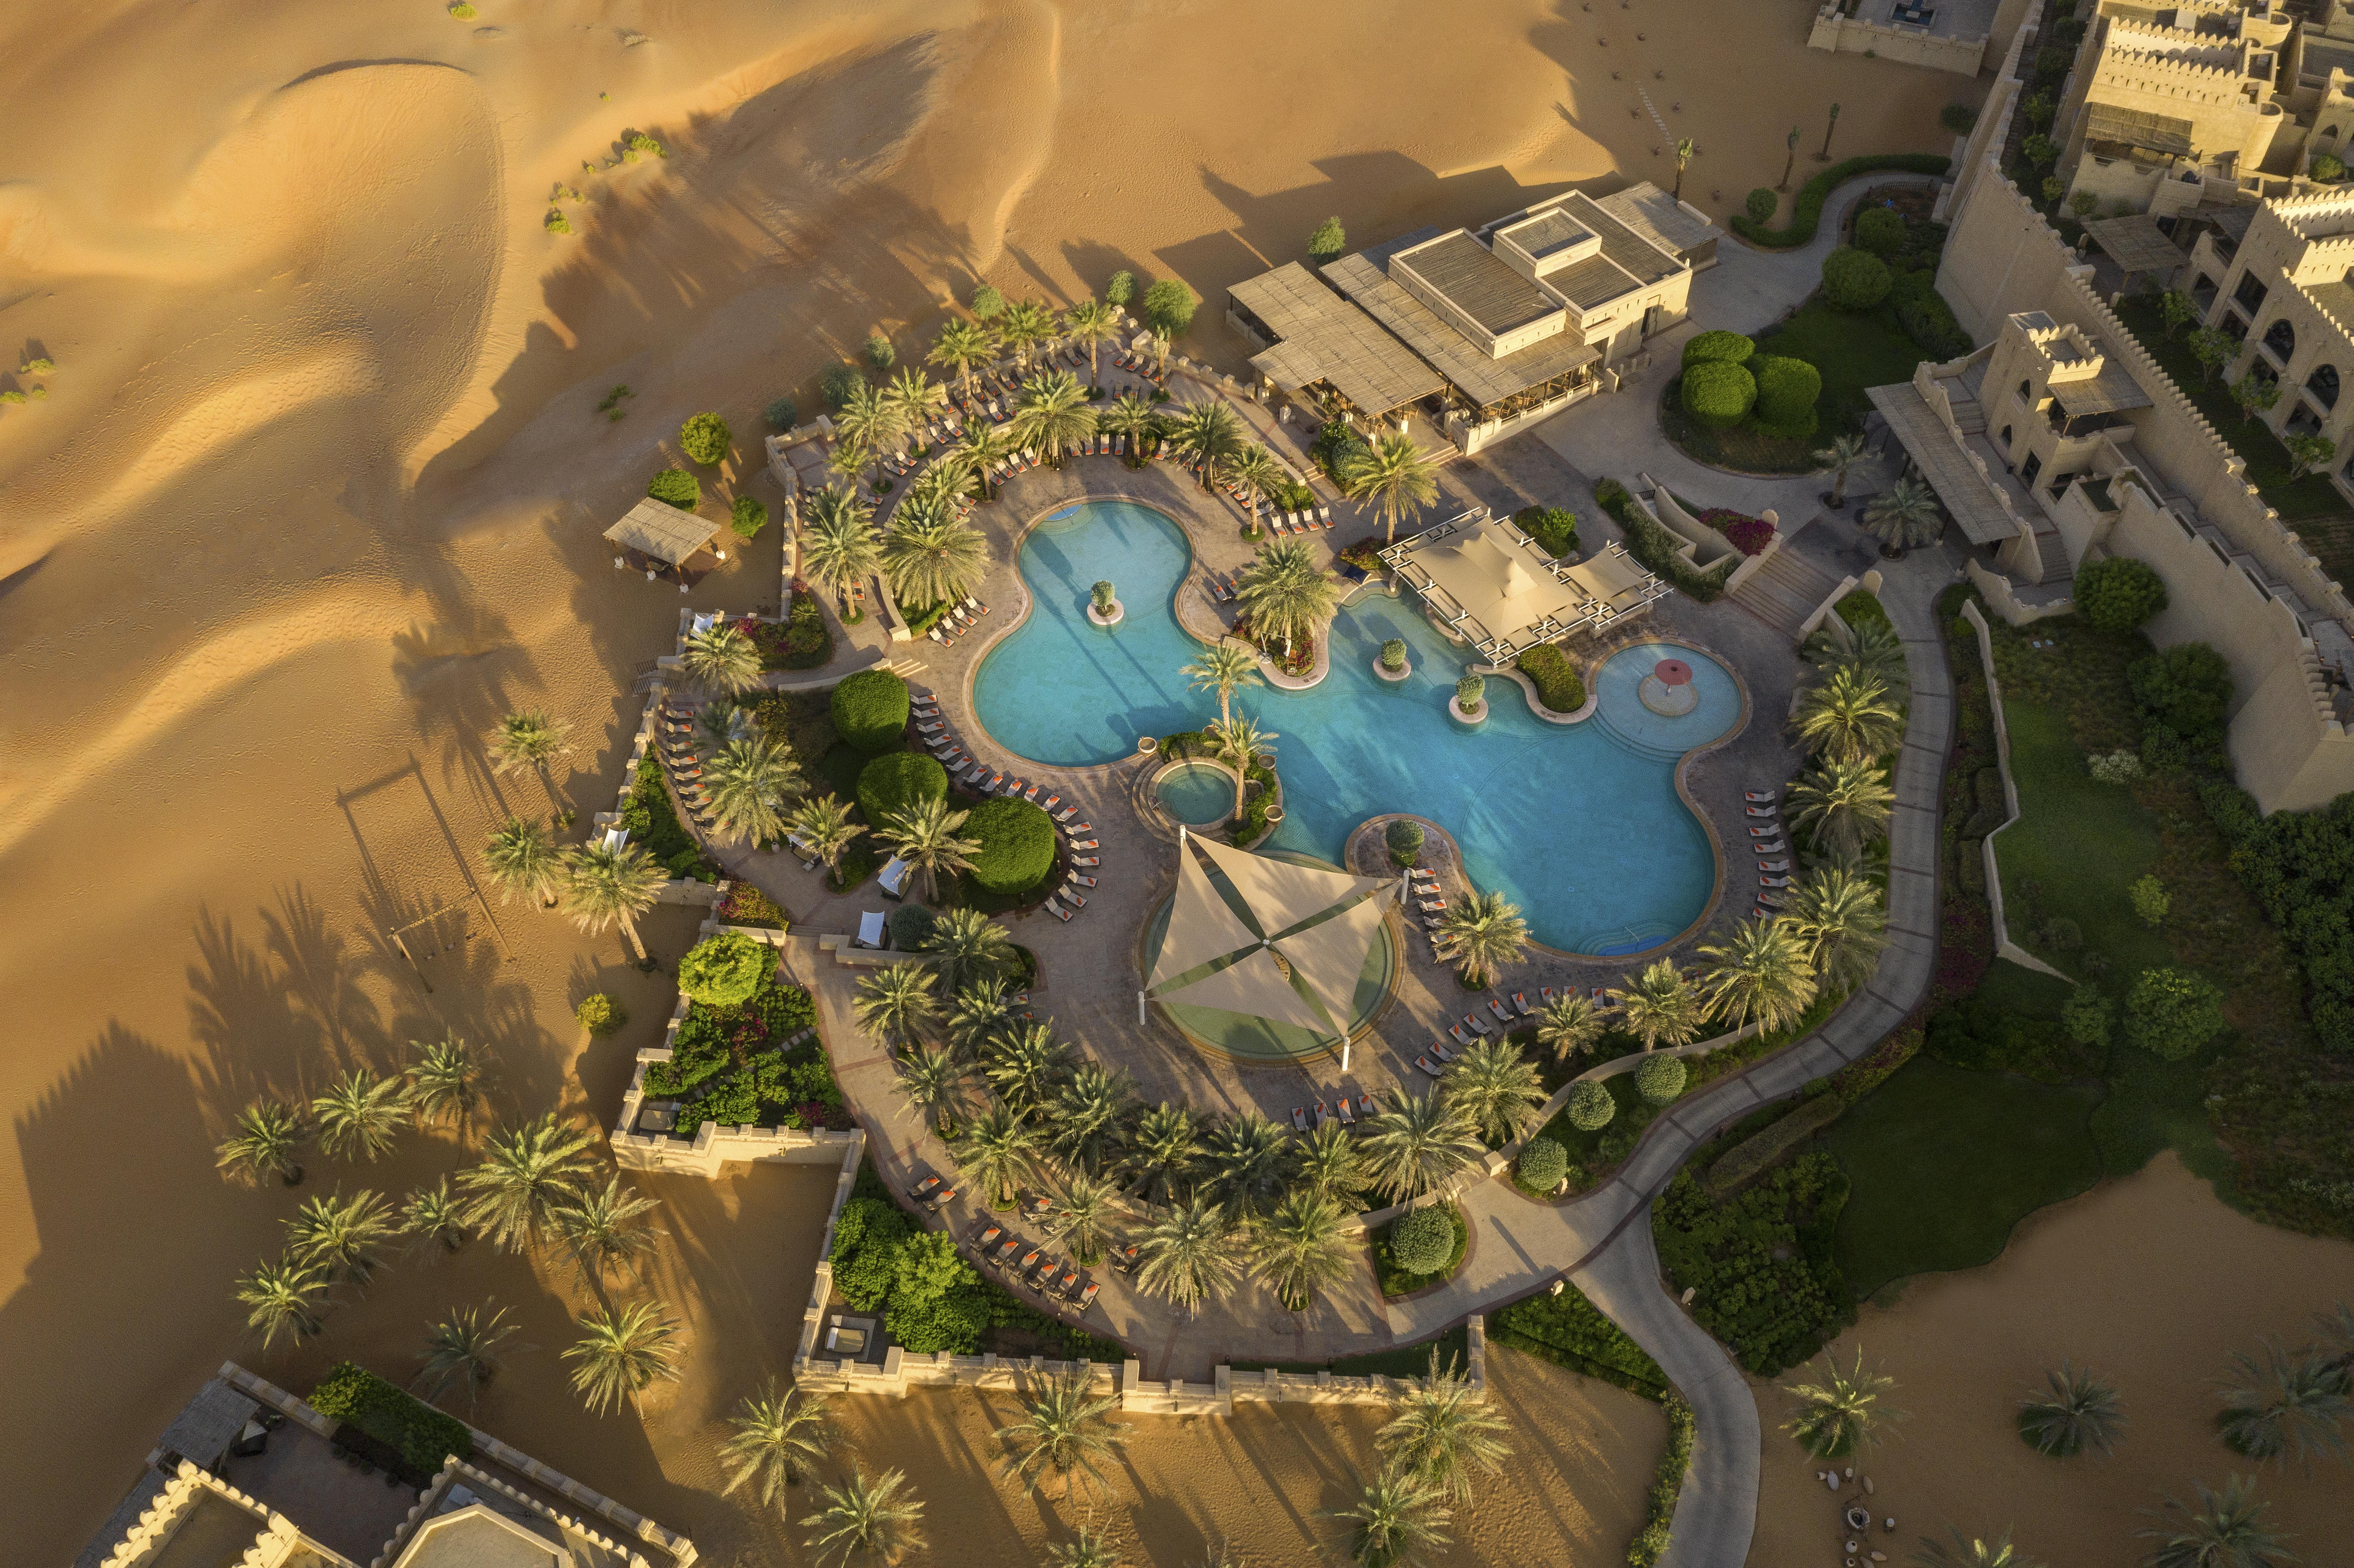 Hotels in the desert